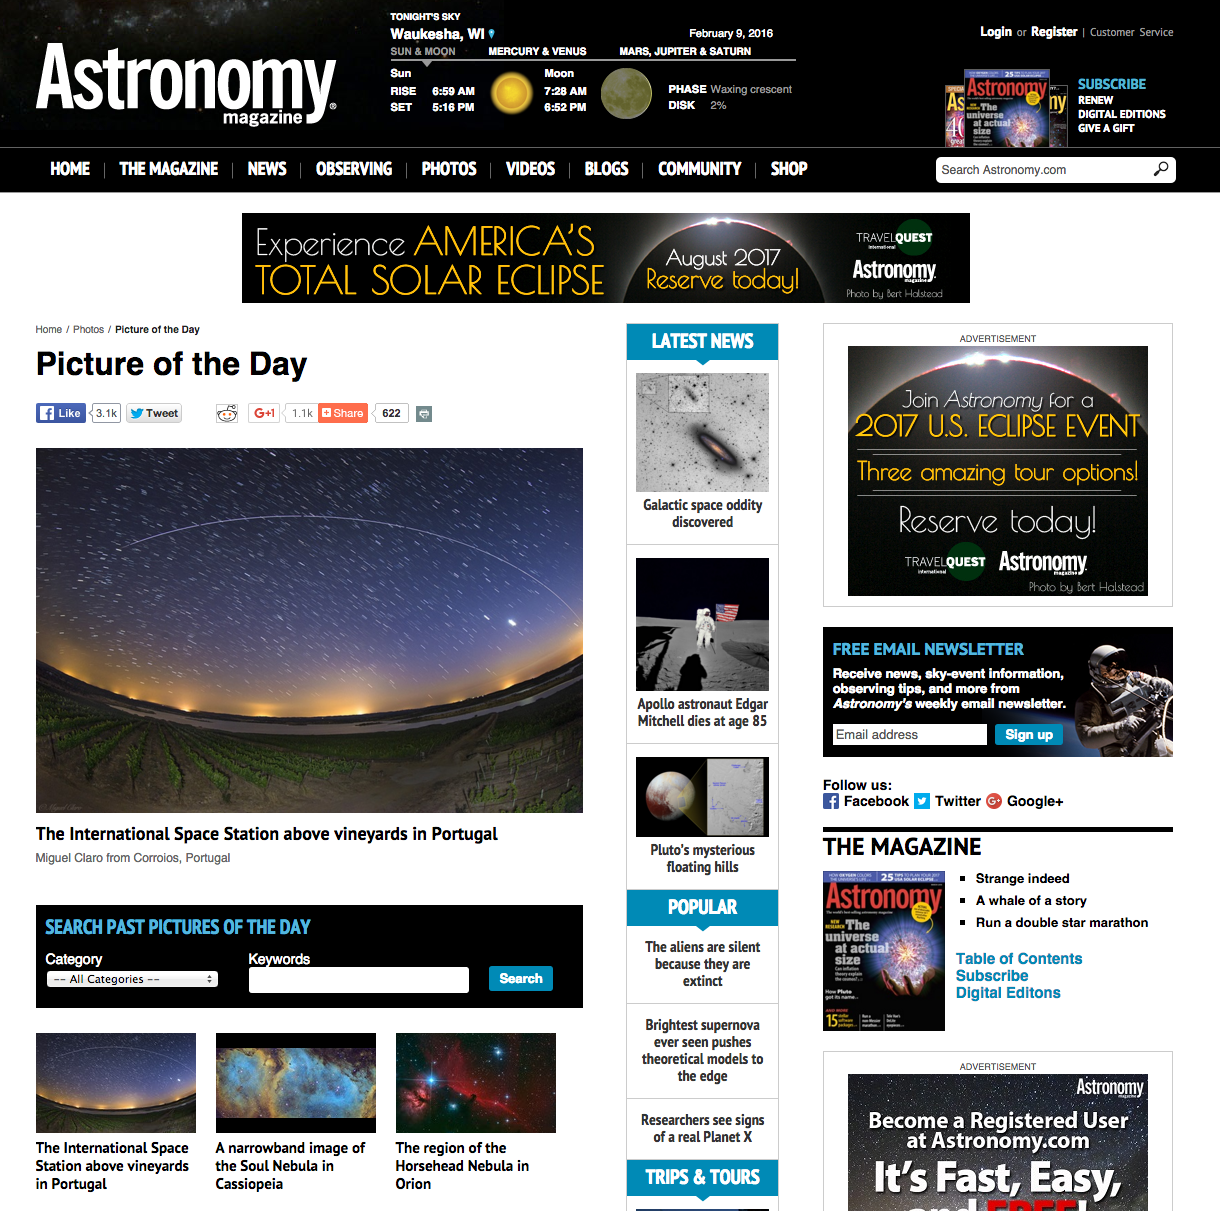 AstronomyPOD-9Fev2015-WP